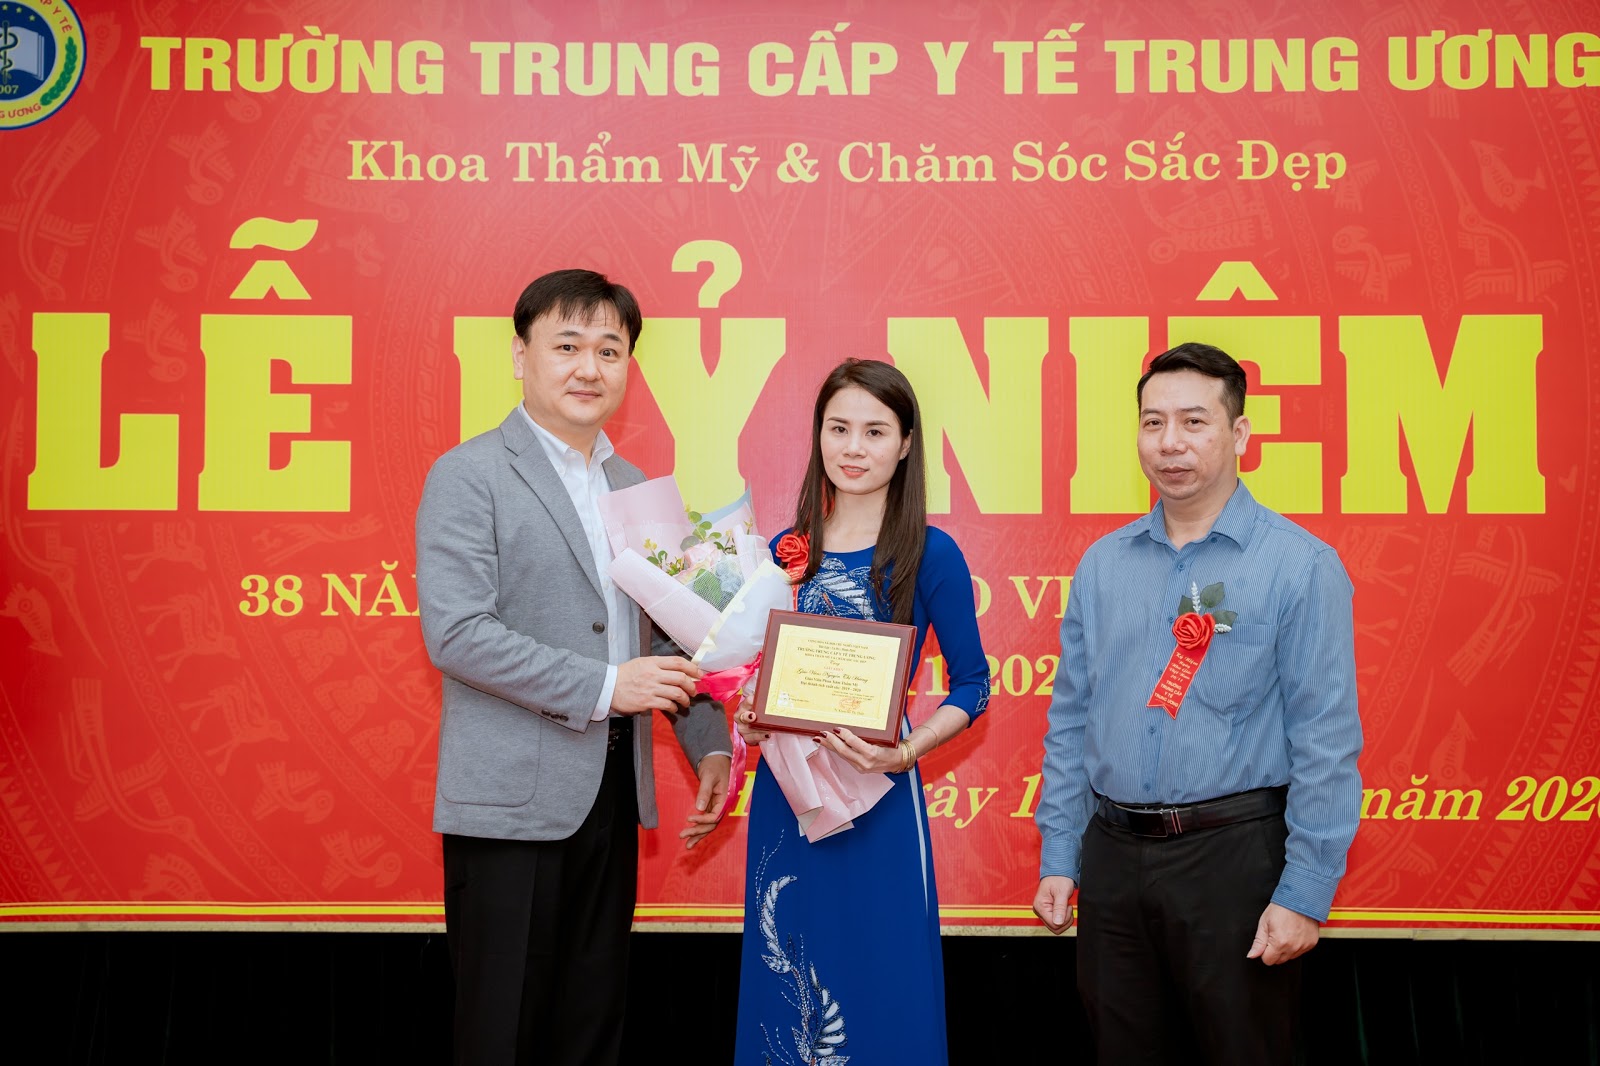 Doanh nhân Nguyễn Thị Hương: “Tôi hạnh phúc vì được cống hiến cho cộng đồng” - 5